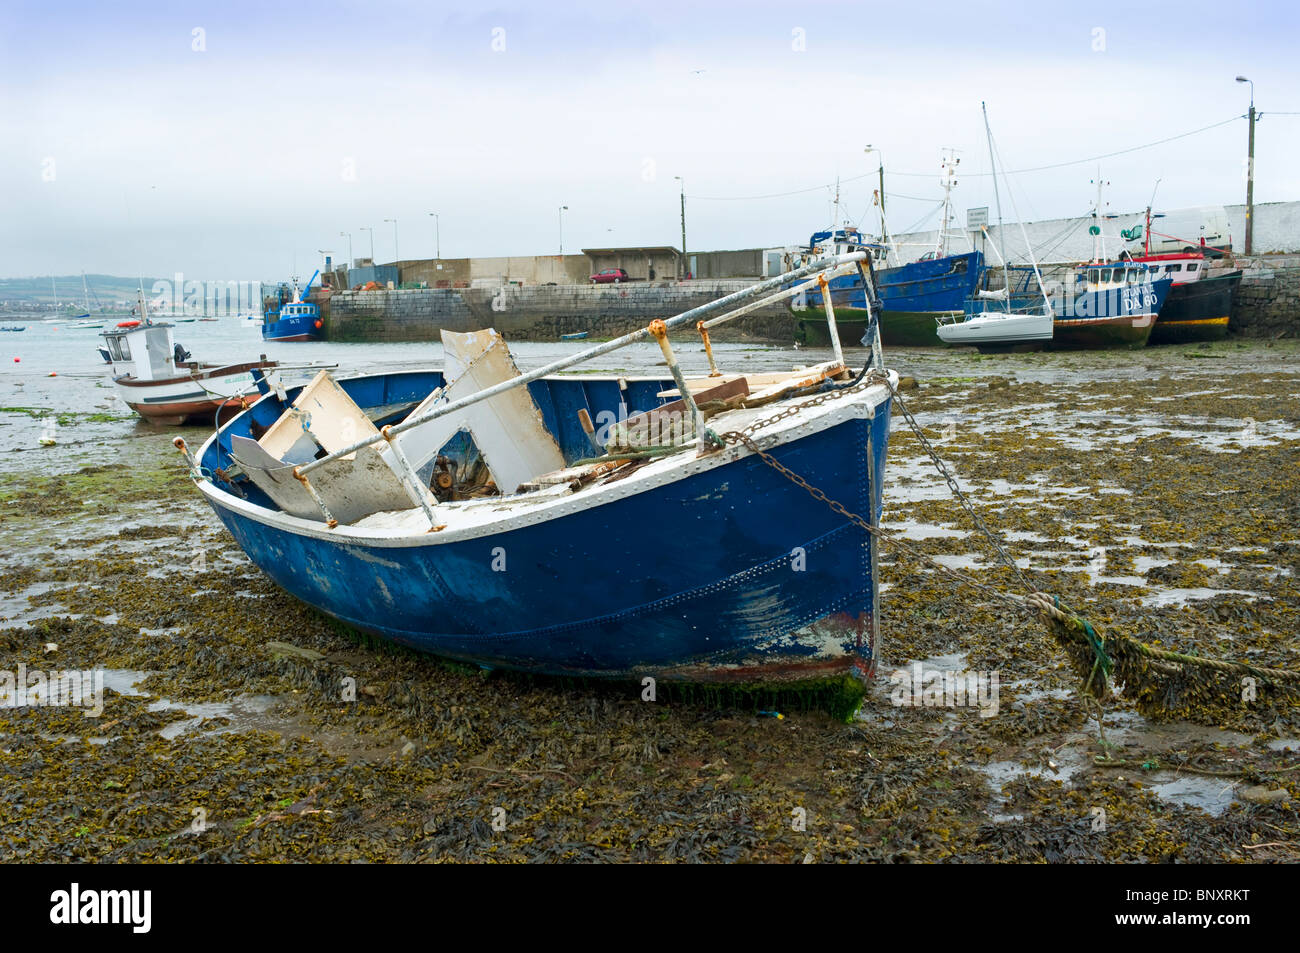 Un Yate naufragado en el puerto de la ciudad costera de Skerries, al norte del condado de Dublín, Irlanda Foto de stock